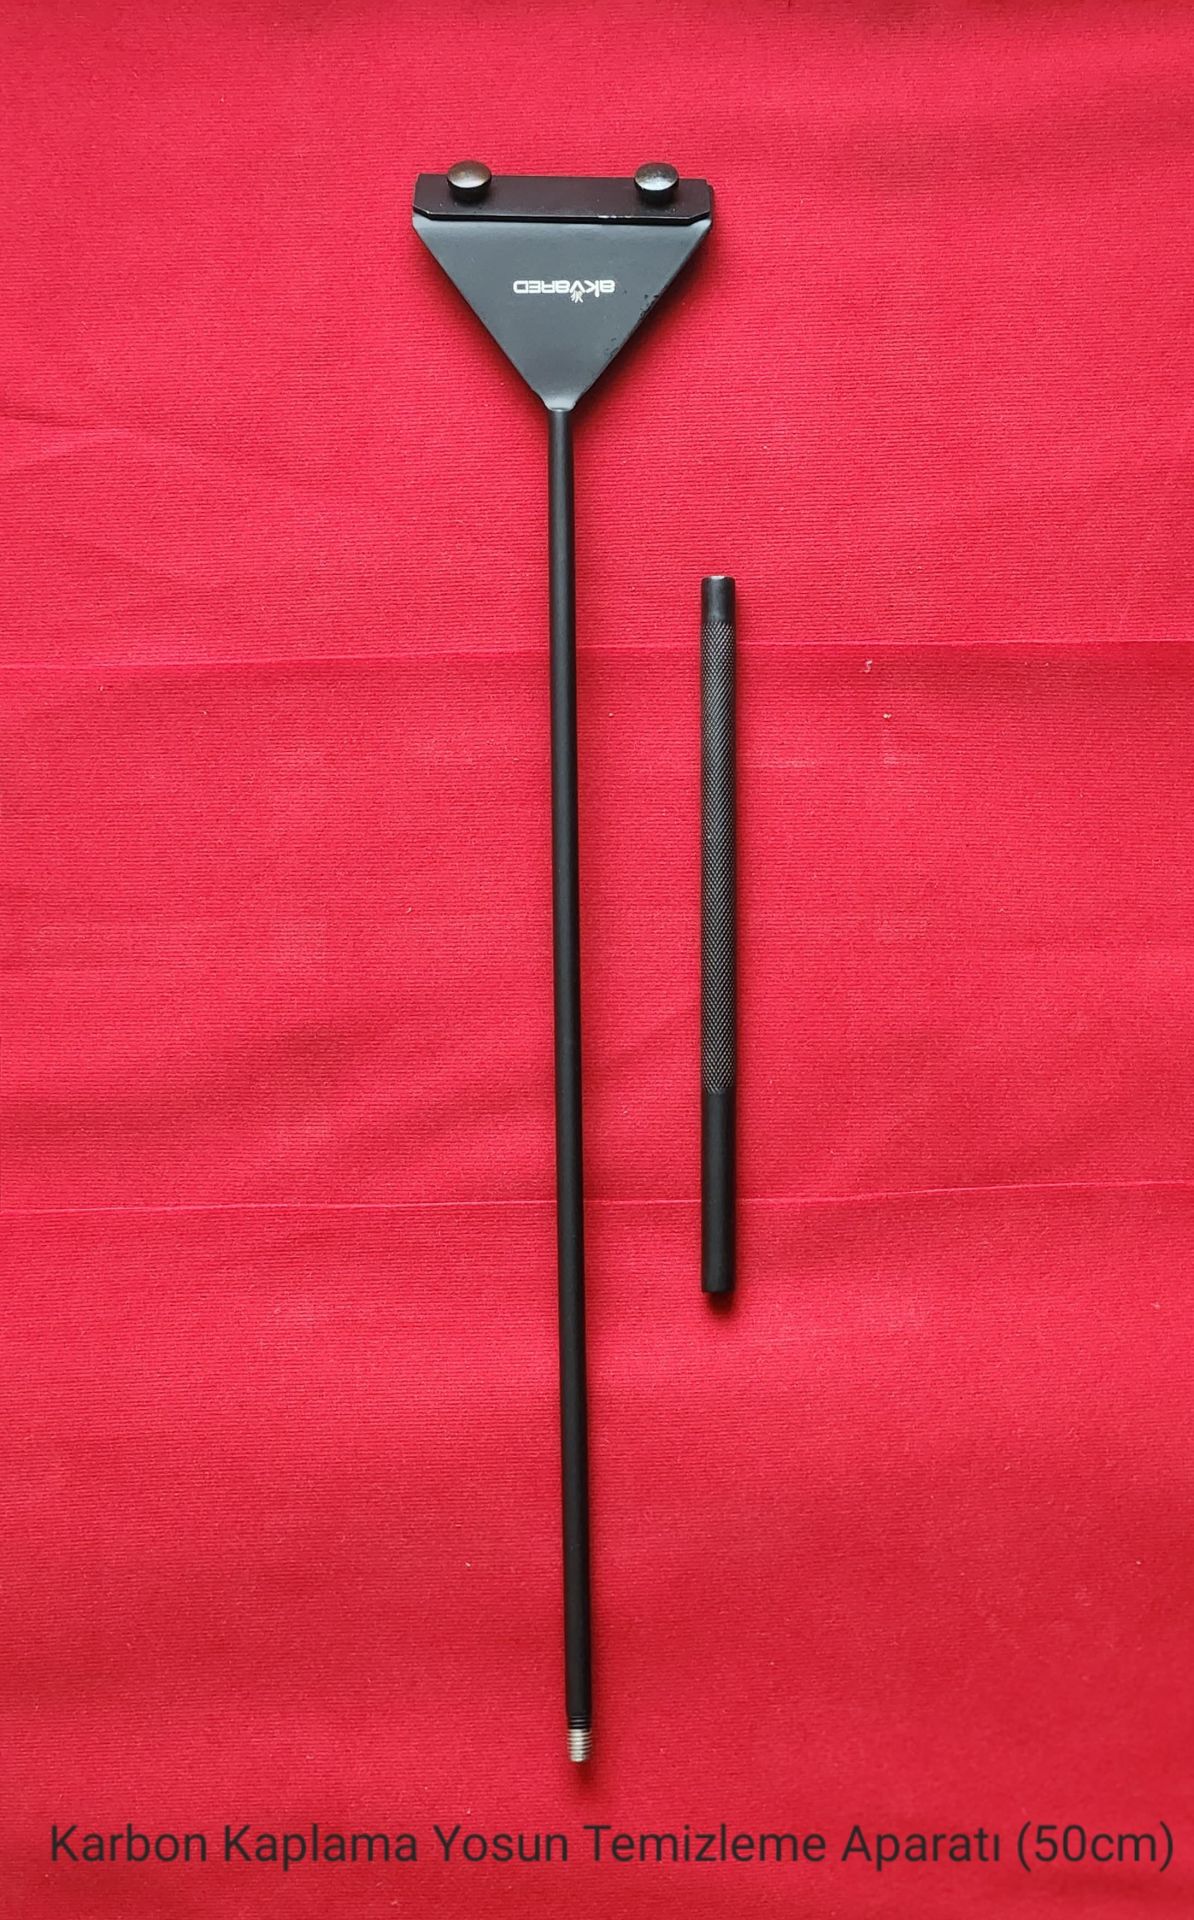 Karbon Kaplama Yosun Temizleme Aparatı (Kazıma) - 50 cm